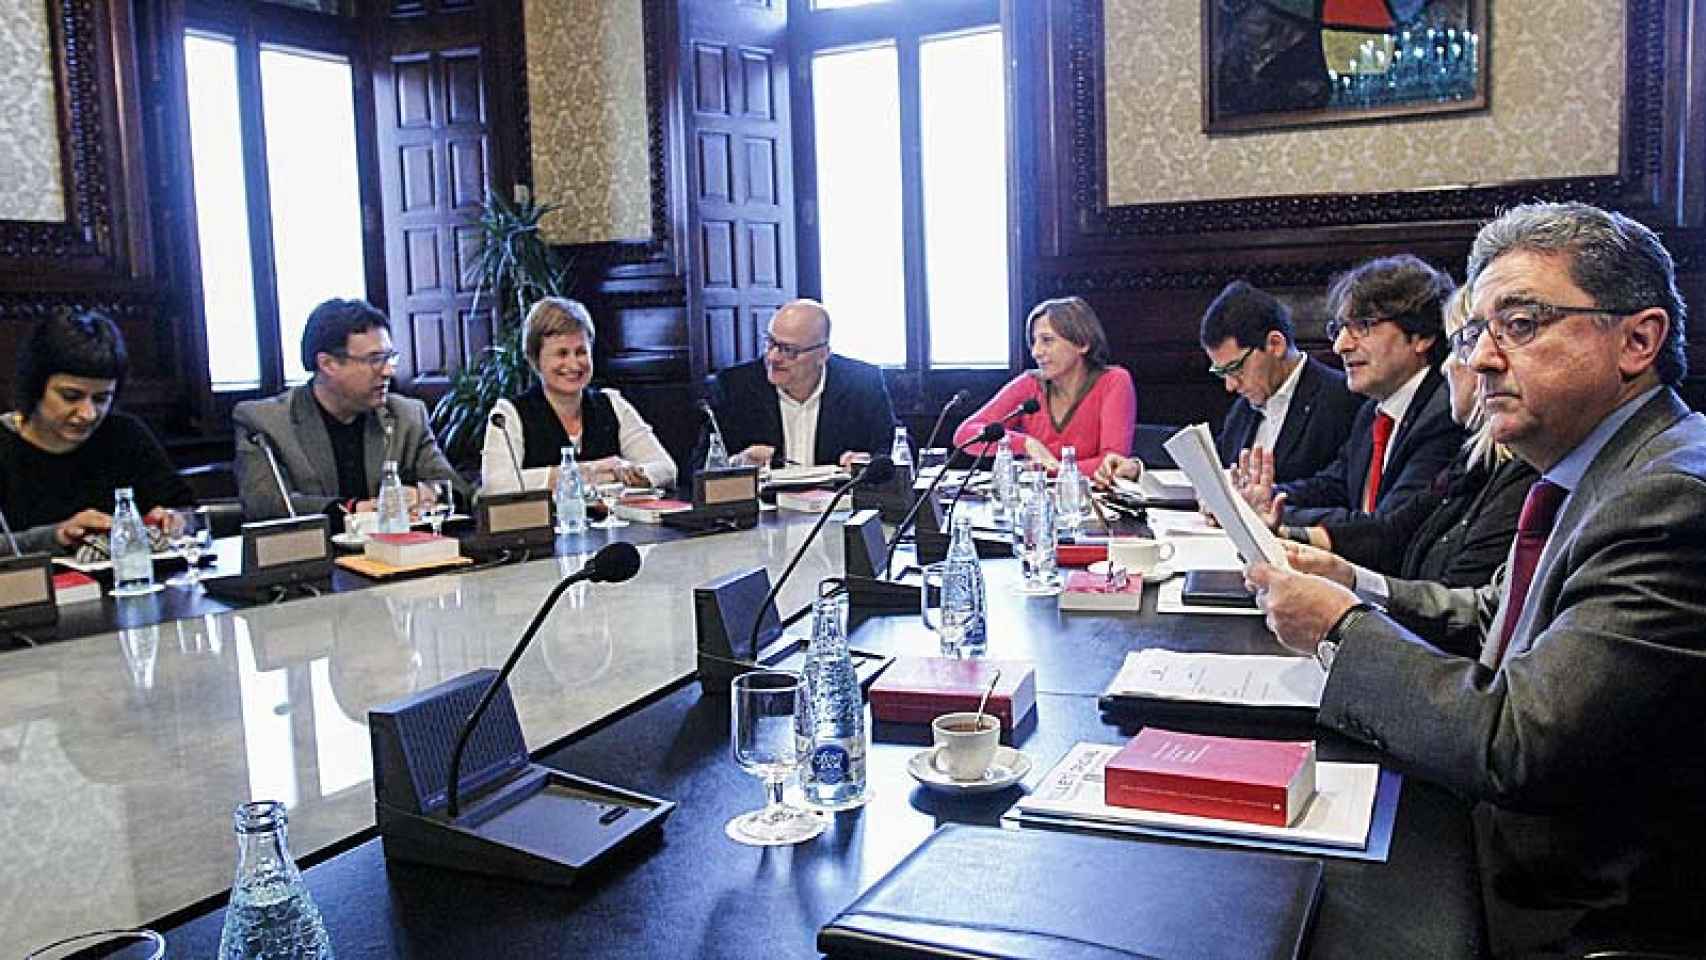 Los diputados, Anna Gabriel (CUP), Joan Josep Nuet (CSQEP), Anna Simó (JXSí) , Lluís M. Corominas (JXS), Carme Forcadell (JxSí), José María Espejo-Saavedra (C's), David Pérez (PSC), Ramona Barrufet (JXSí) y Enric Millo (PP), durante una reunión de la Mesa